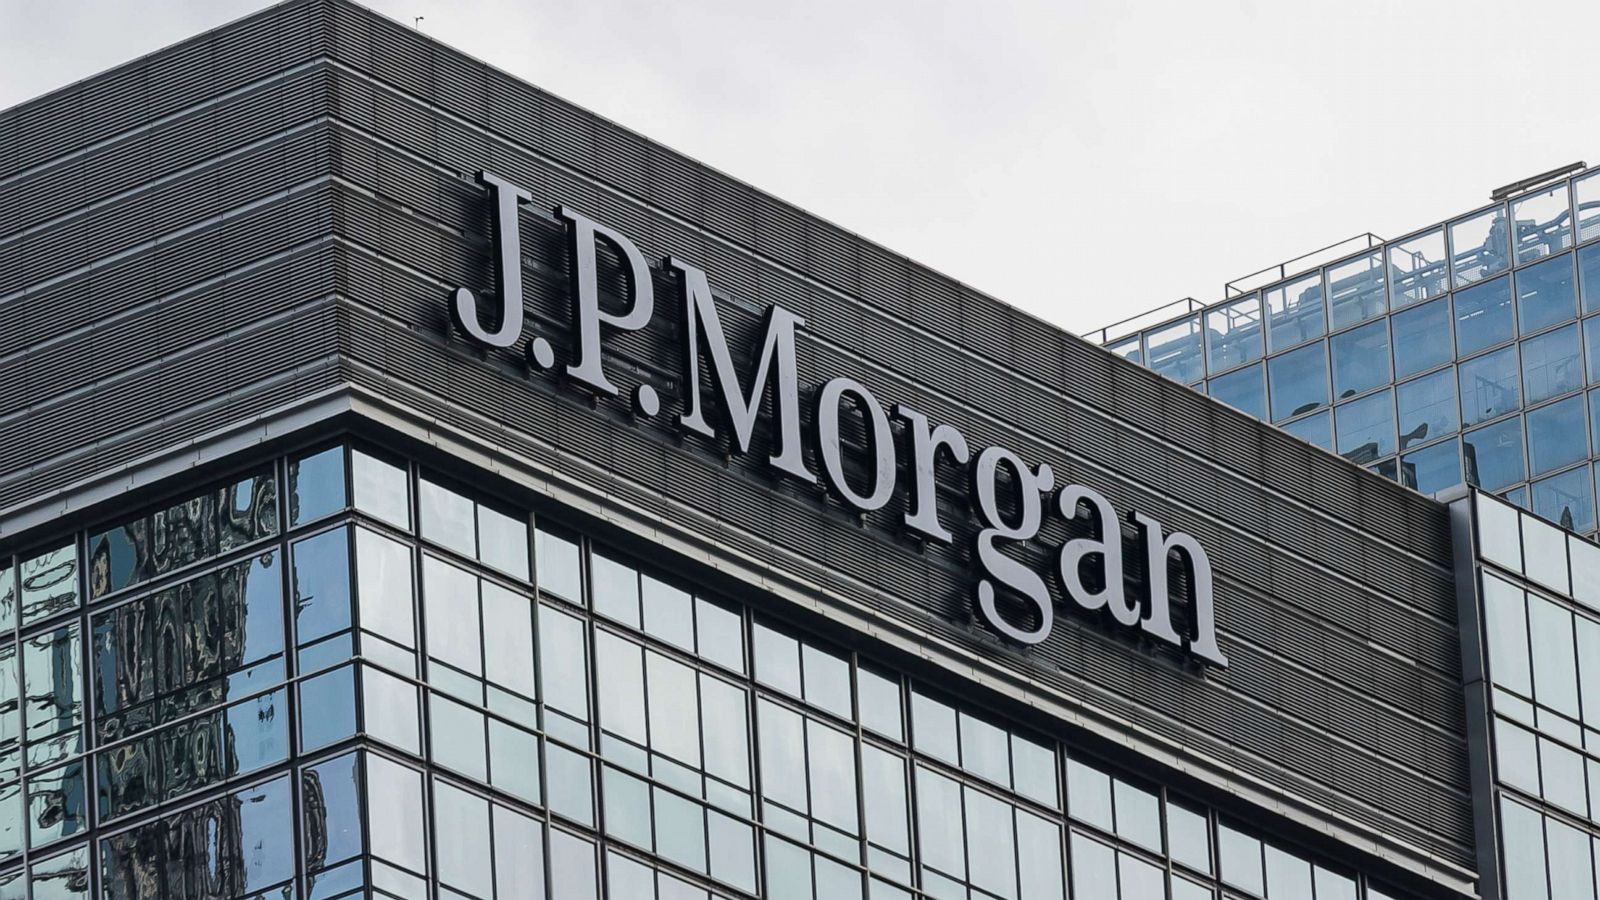 Крупнейший банк США JPMorgan сворачивает свою деятельность на территории России из-за ее агрессии против Украины.